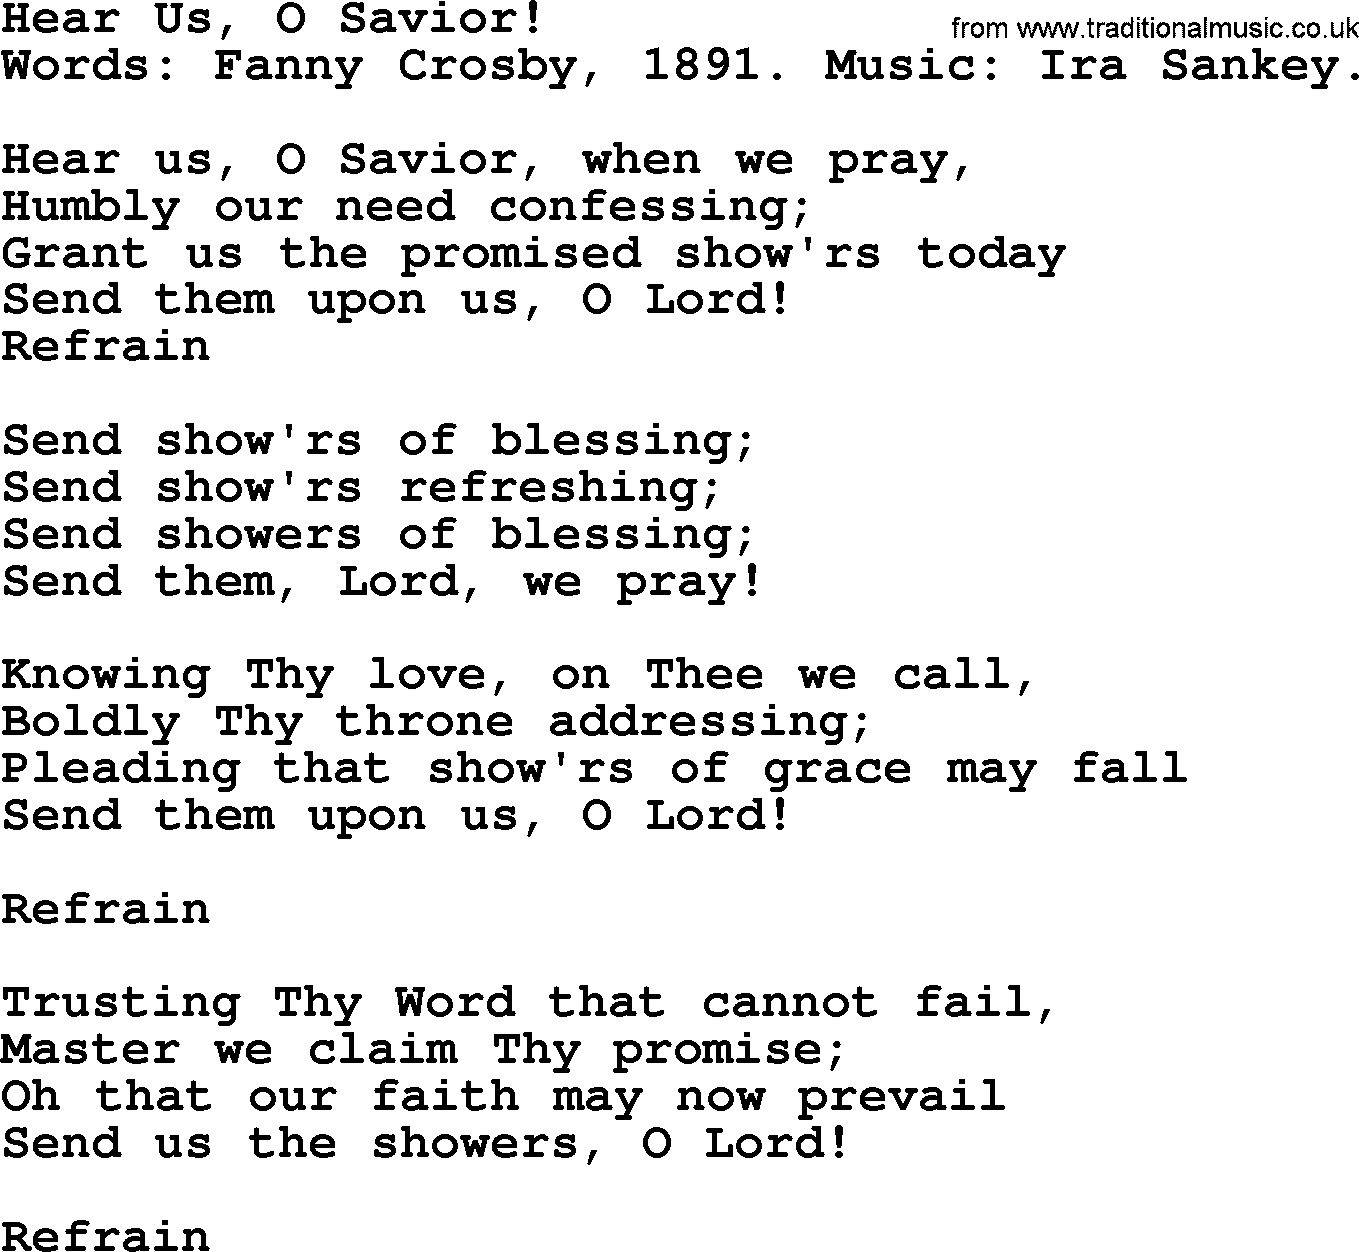 Hear Us, O Savior!, by Fanny Crosby - hymn lyrics